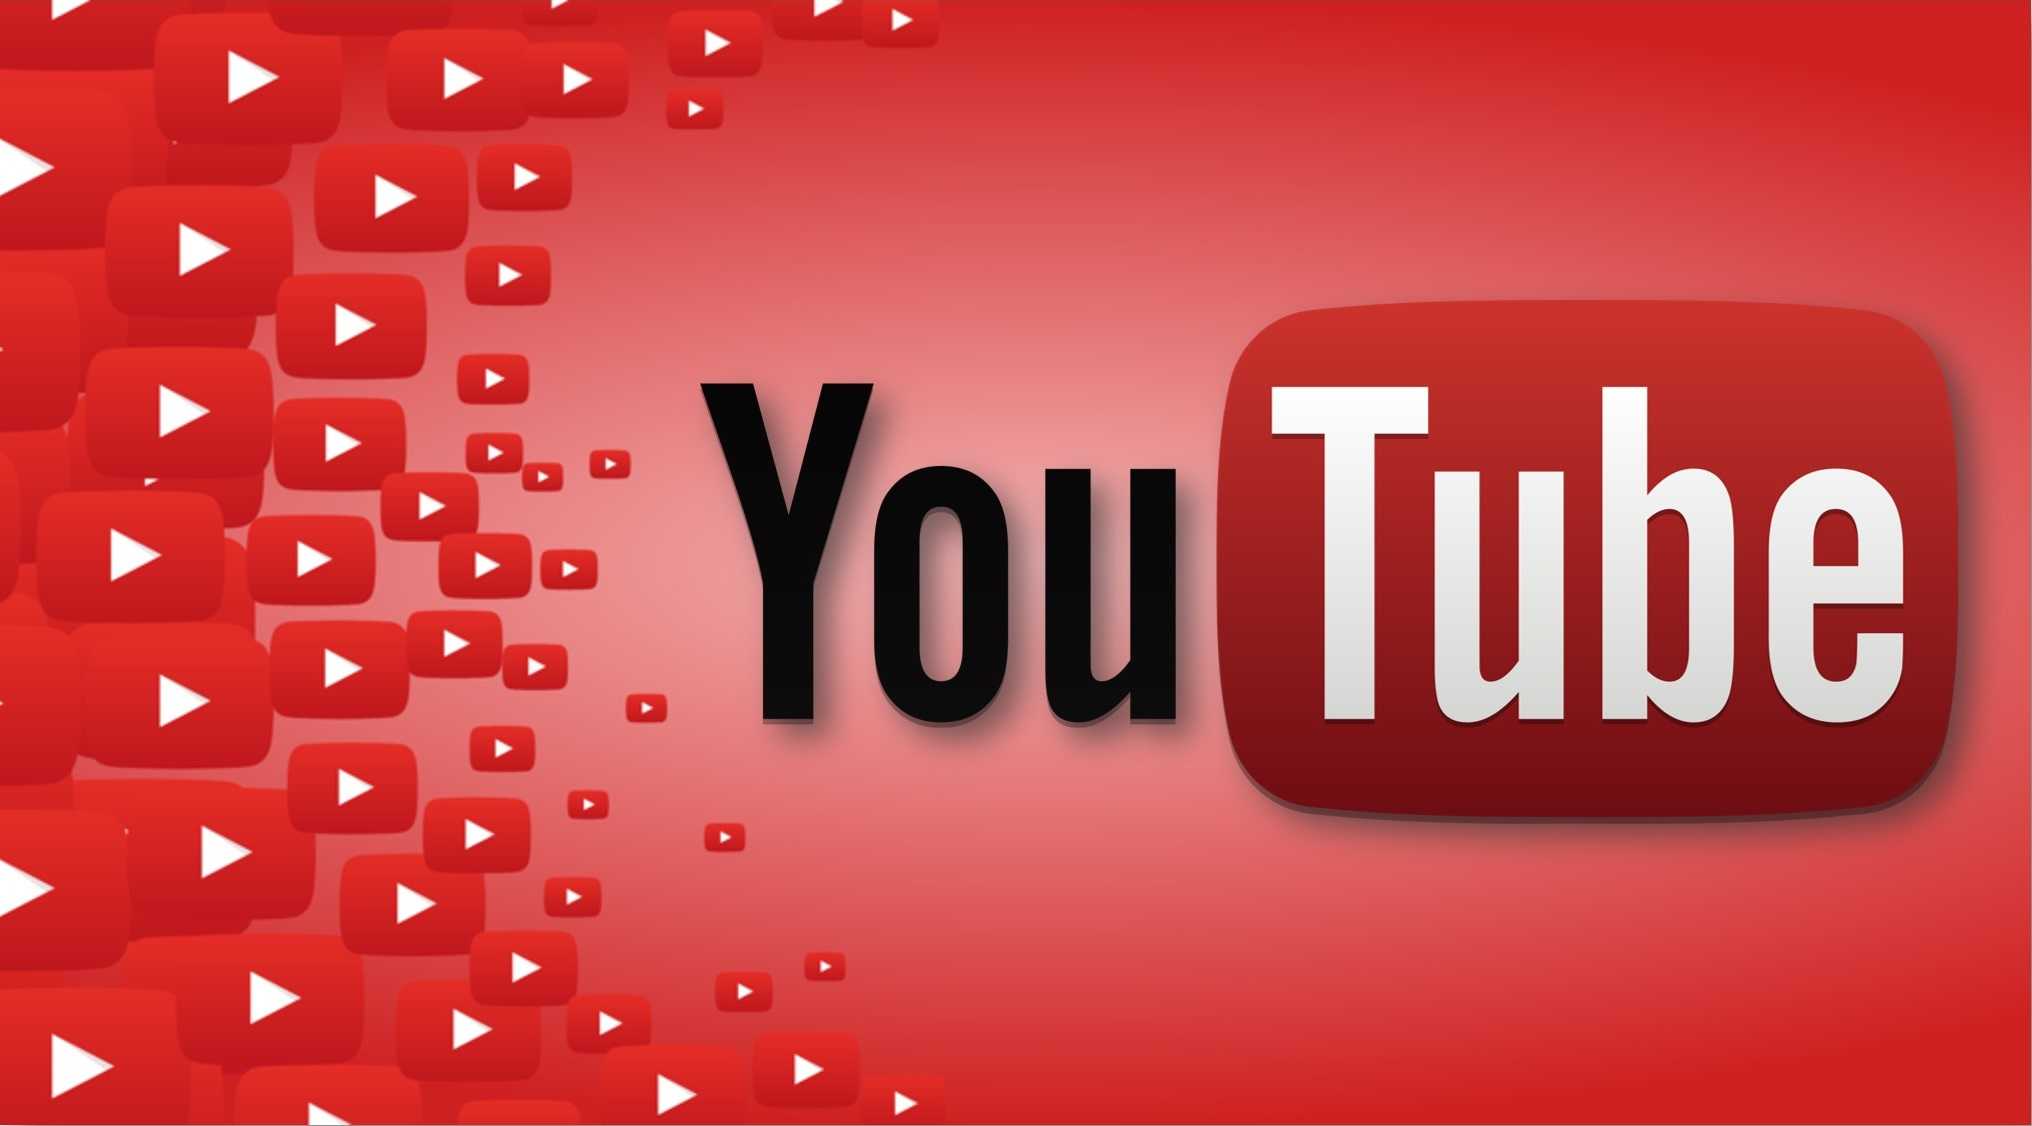 يوتيوب تحدث سياستها تجاه المخالفات لتحسين الشفافية ابتداء 25 فبراير 2019